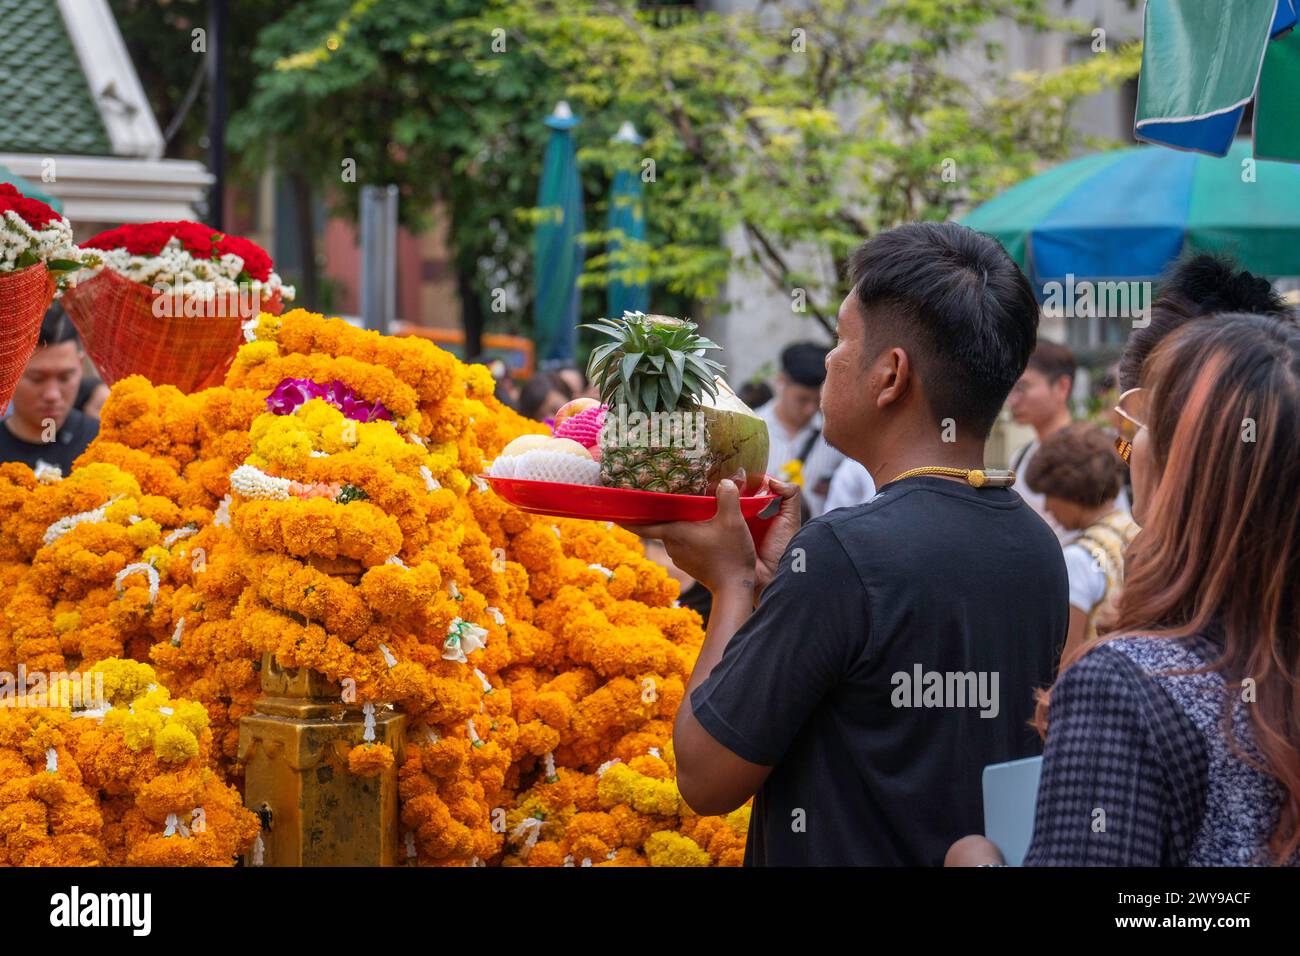 Nel cuore del centro di Bangkok, presso il Santuario Erawan, un uomo asiatico offre le sue preghiere consegnando un cestino pieno di frutta acquistata come offerta. Bangkok, Thailandia. Foto Stock